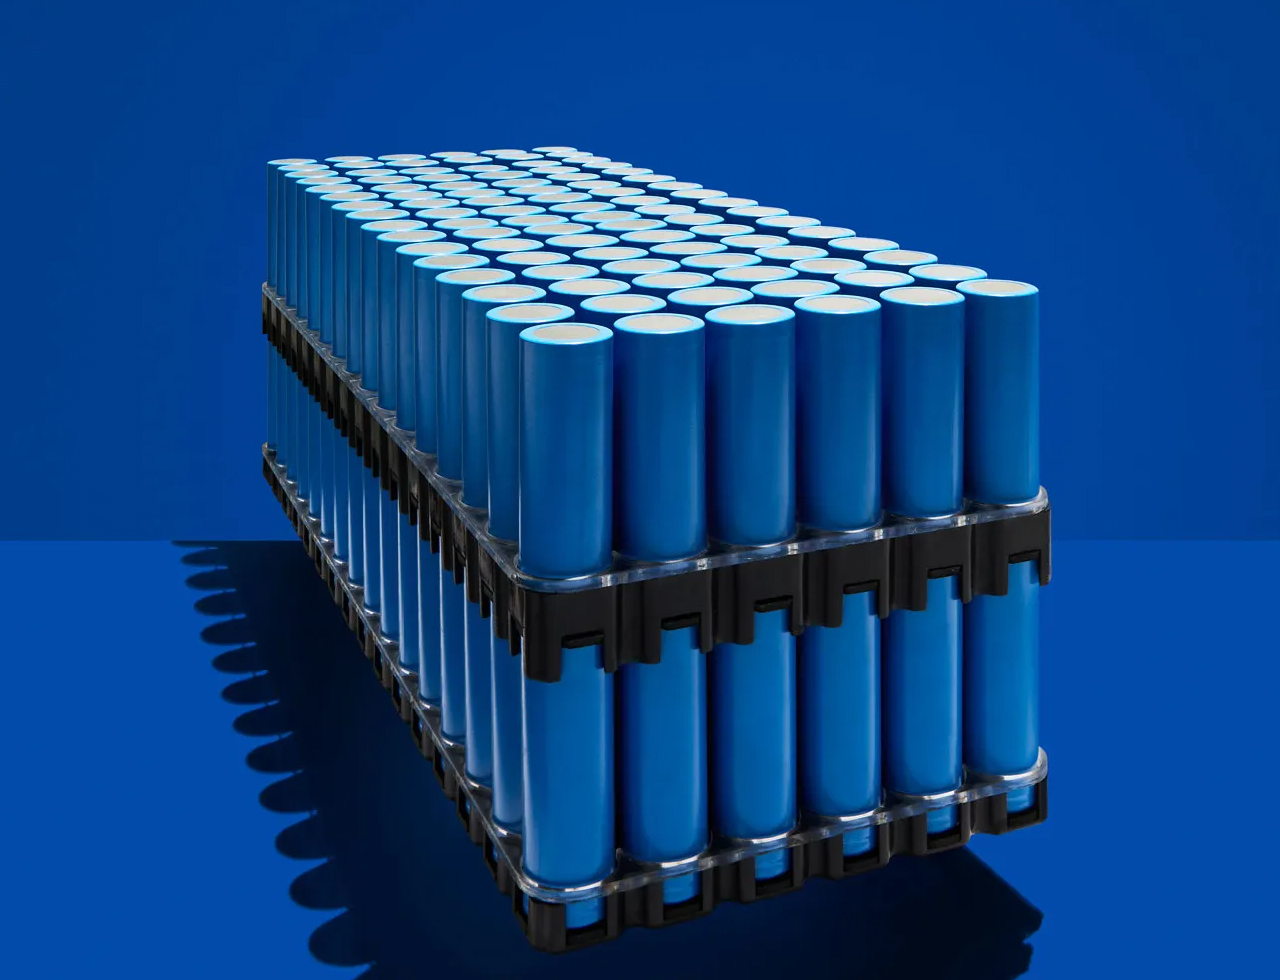 Instruktioner til brug af lithium-batterier